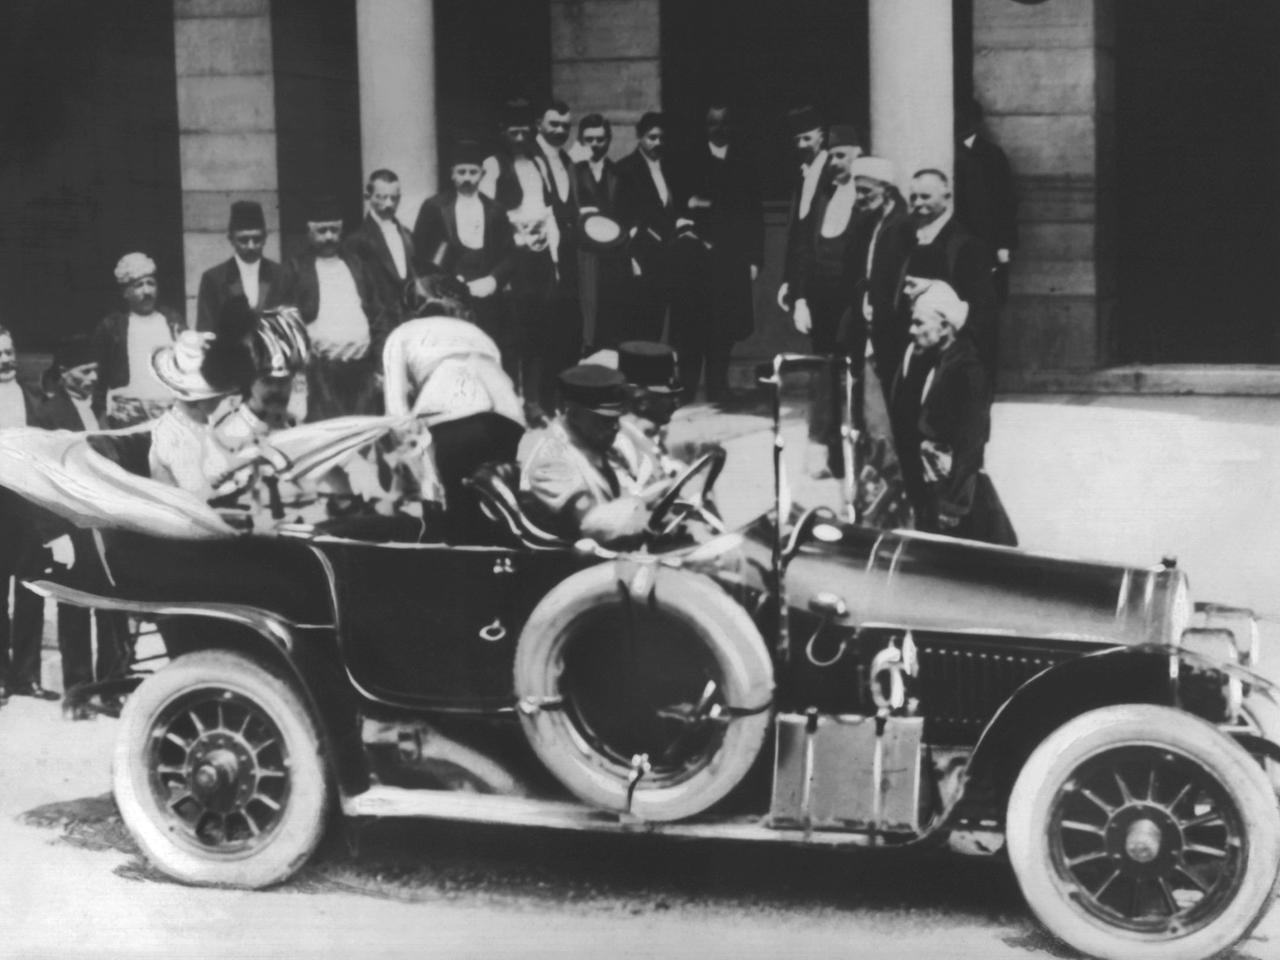 Das österreichische Thronfolgerpaar wenige Augenblicke vor dem tödlichen Attentat im offenen Wagen. Thronfolger Franz Ferdinand und seine Gattin Sophie wurden während eines Besuchs in Sarajevo erschossen.